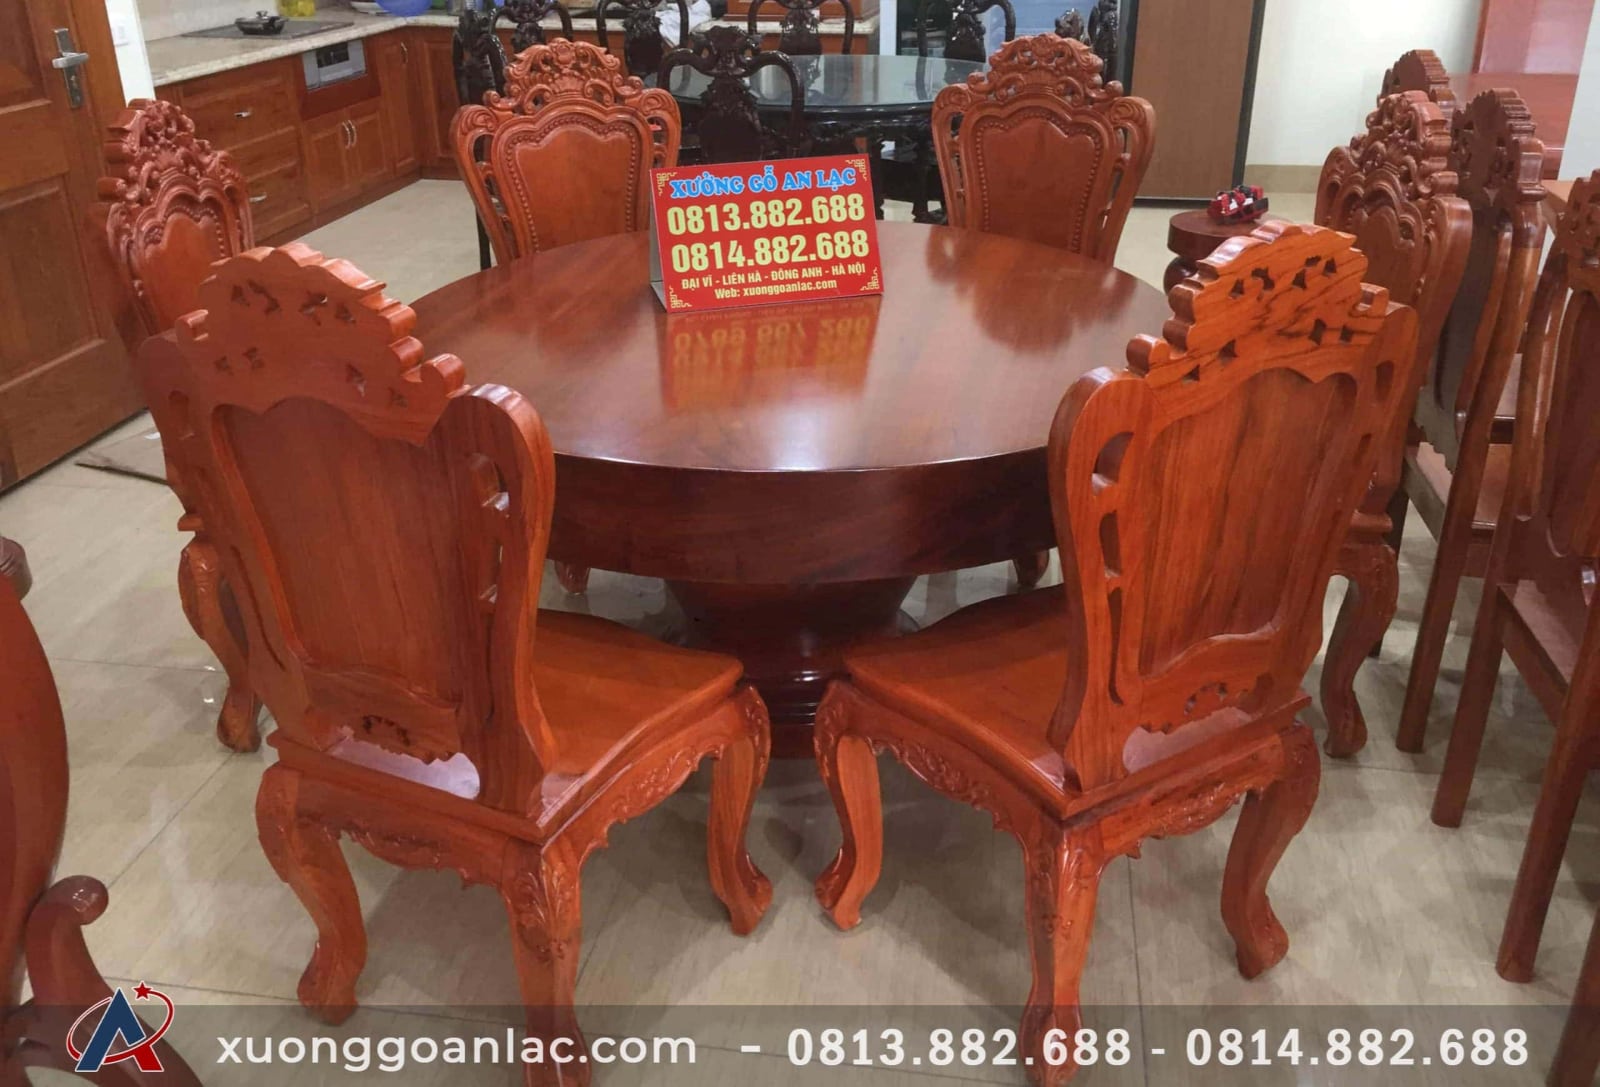 Với bộ bàn ăn tròn nguyên khối gỗ gõ đỏ sáu ghế Louis hoa hồng, bạn sẽ có một không gian ăn uống đặc biệt với sự hiện đại và đẳng cấp. Với chiếc bàn ăn tròn được chế tác từ gỗ cao cấp và thiết kế độc đáo, sản phẩm này sẽ thu hút sự chú ý của mọi người và tạo nên một không gian ấm cúng, hiện đại cho gia đình bạn.